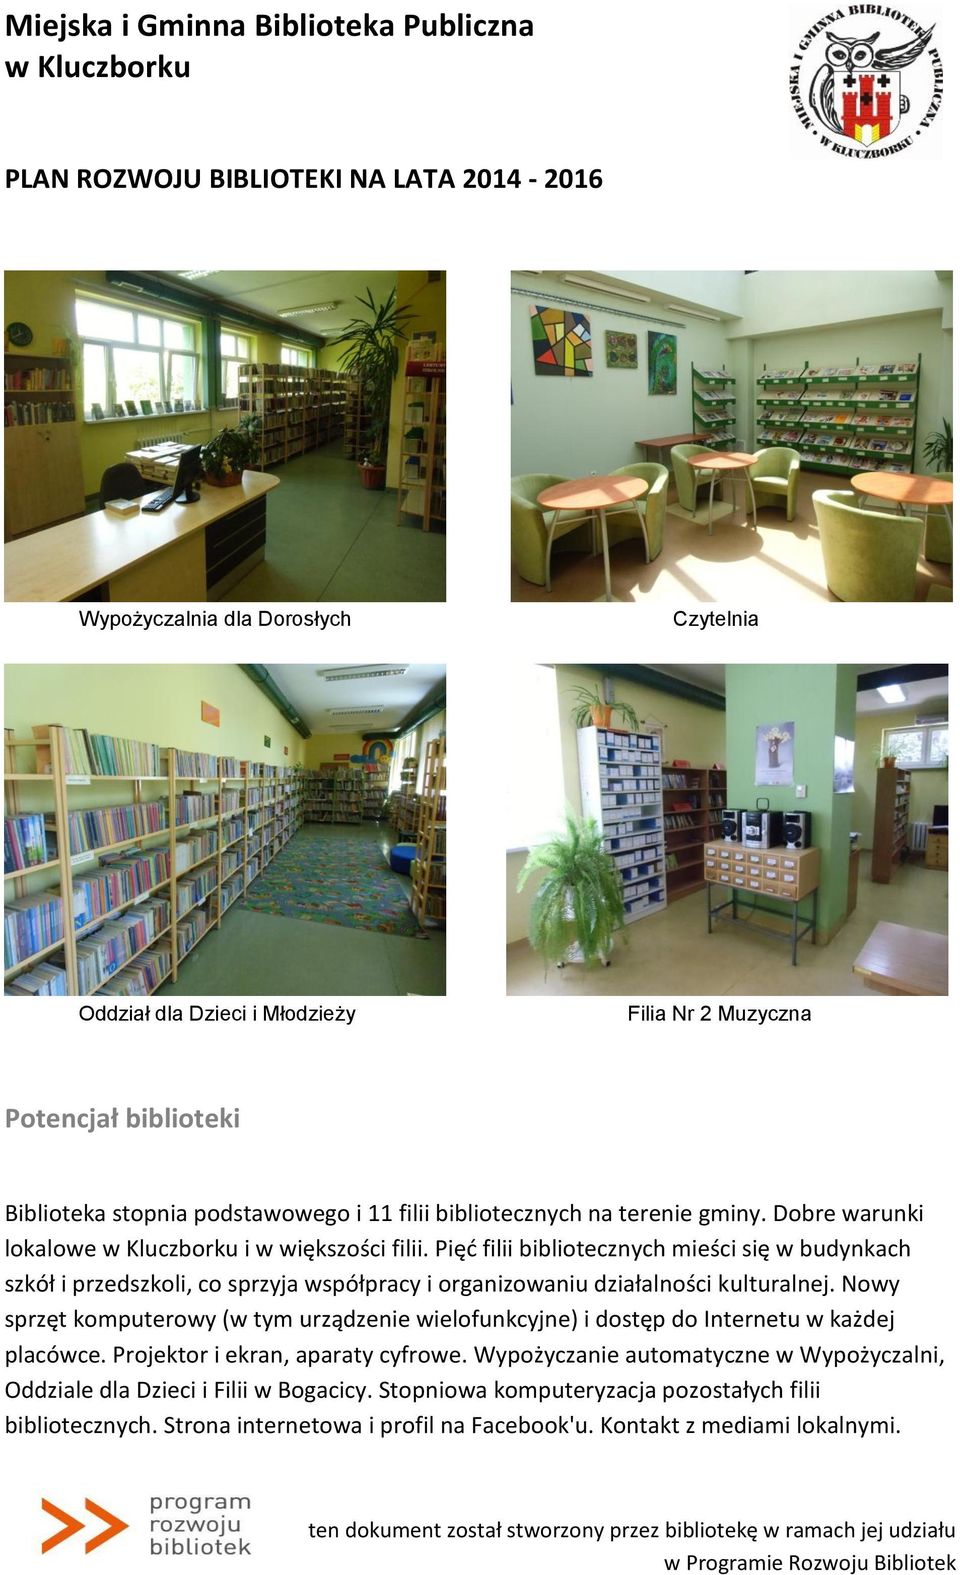 Pięć filii bibliotecznych mieści się w budynkach szkół i przedszkoli, co sprzyja współpracy i organizowaniu działalności kulturalnej.